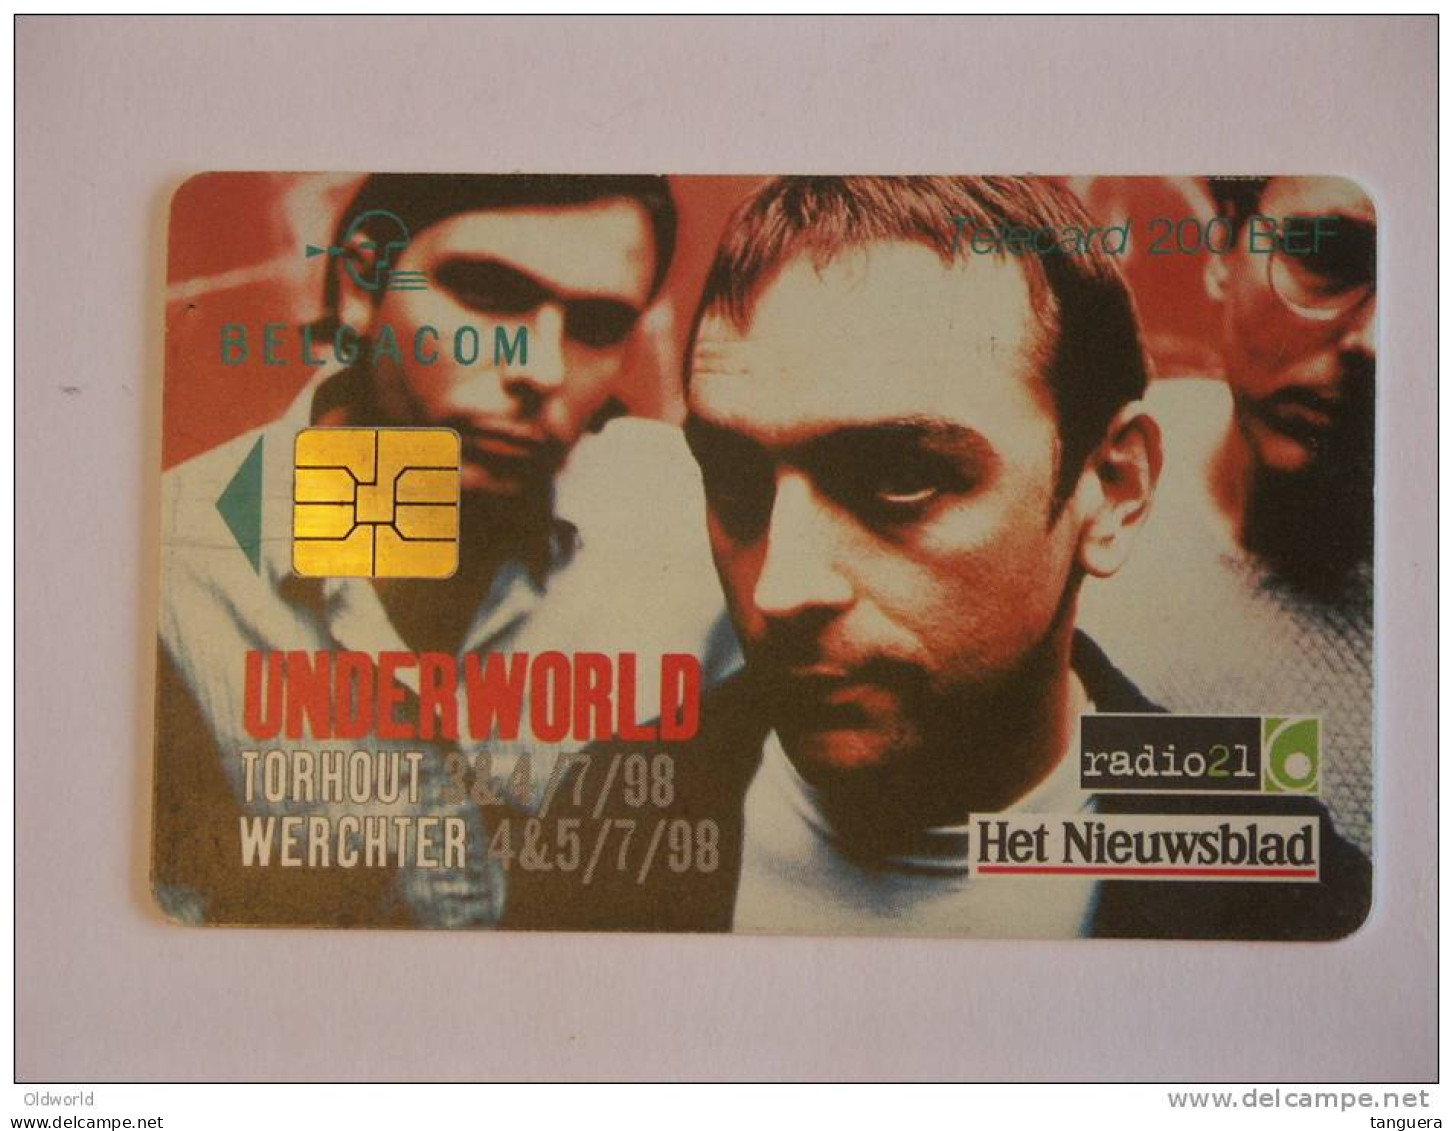 Telefoonkaart Telecard Belgacom Belgique België TW Underworld 1998 - Mit Chip